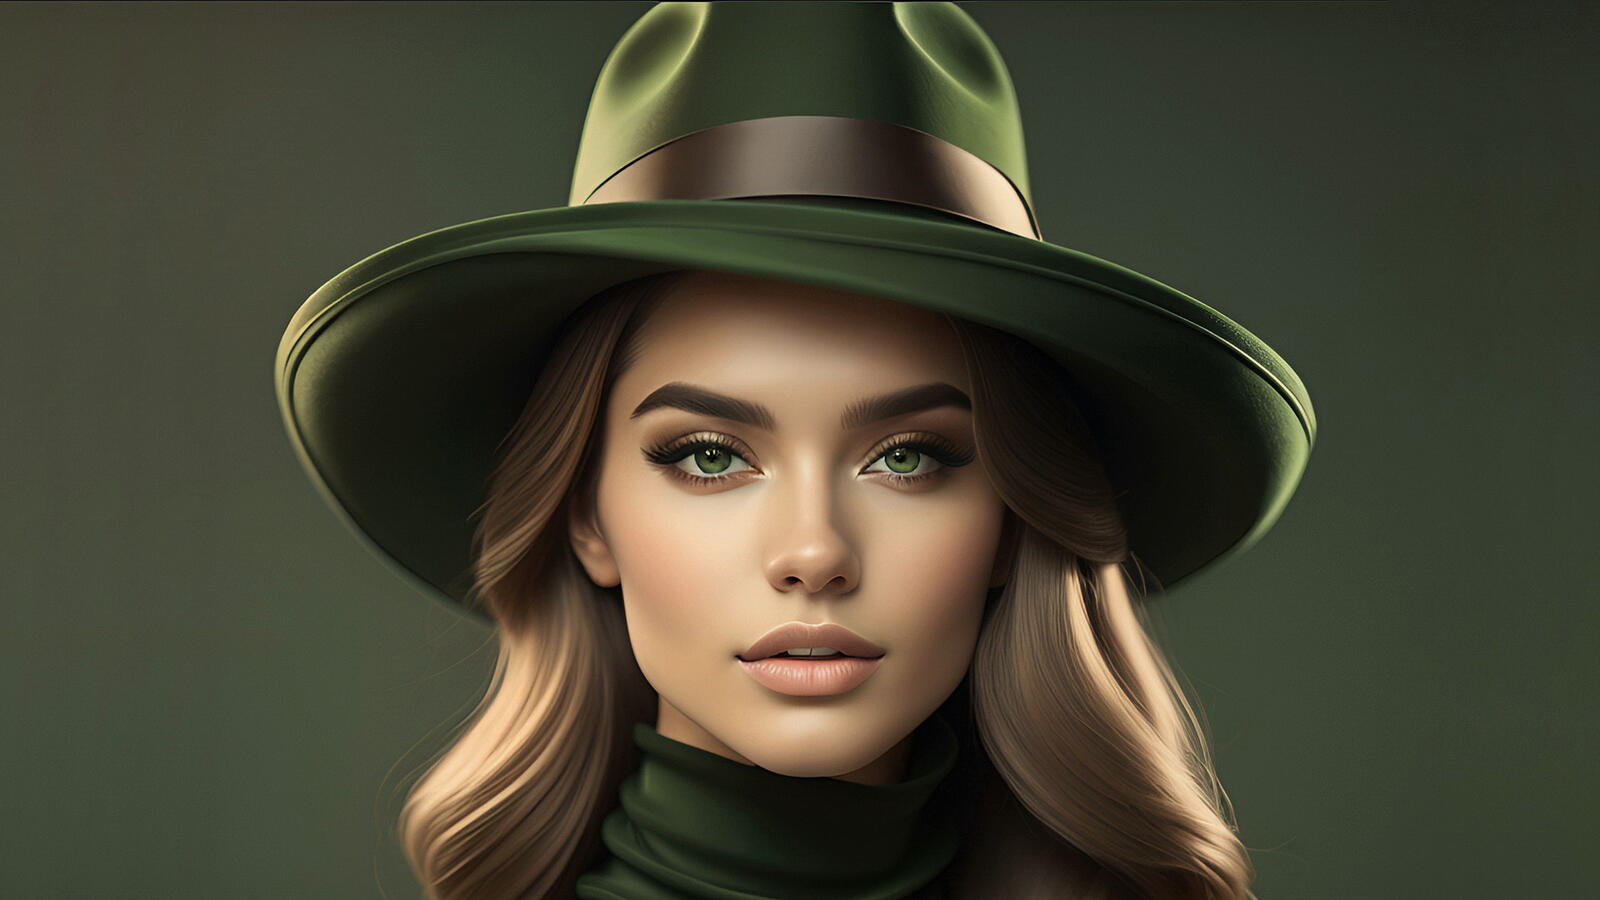 Бесплатное фото Портрет девушки шатенки в шляпе на зеленом фоне